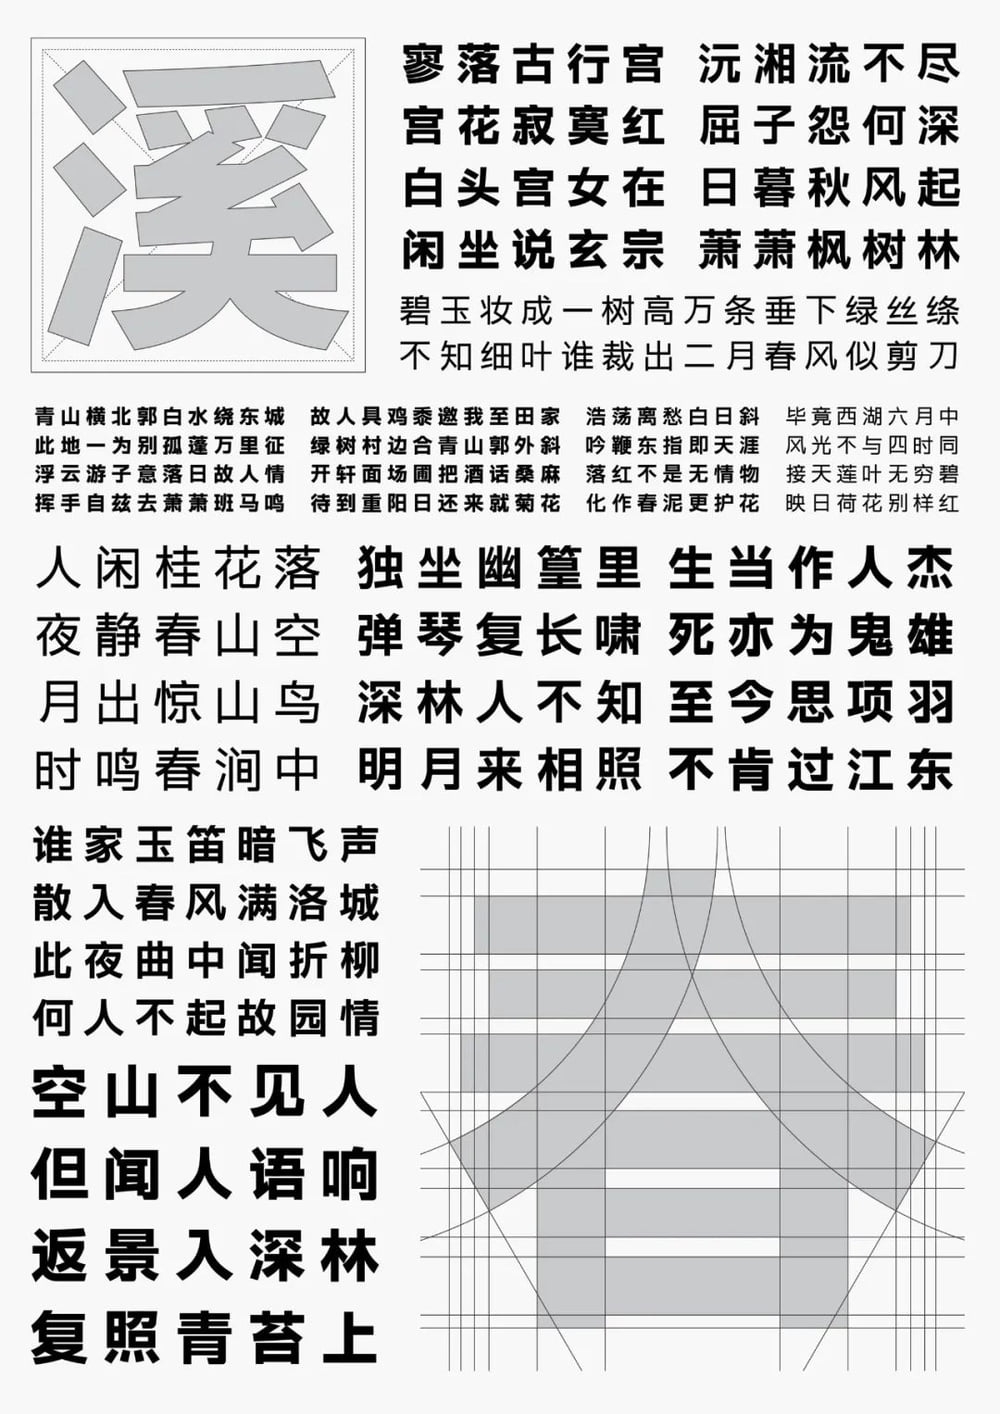 字体圈伟君黑-沉稳中正的免费商用中文黑体字体插图1